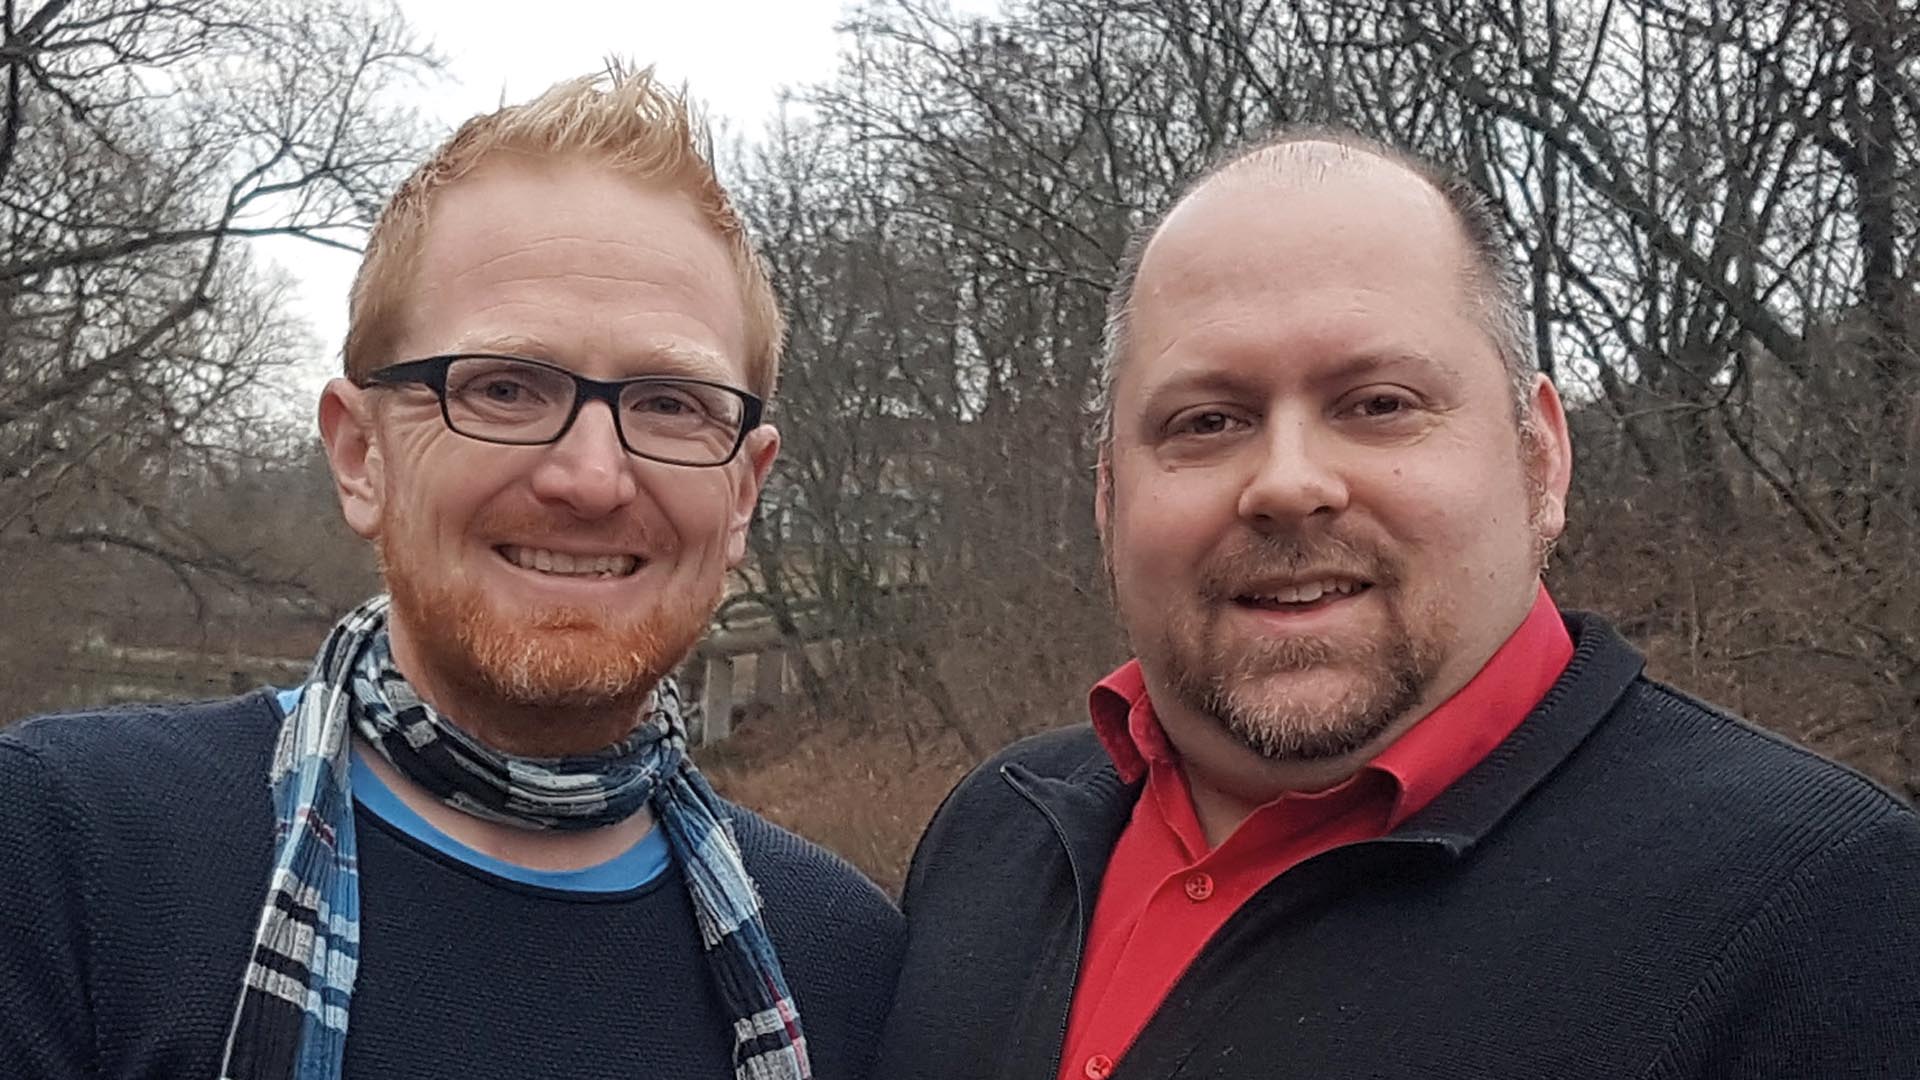 Die Autoren: Chris Pahl (links) ist Projektleiter der Jugendveranstaltung Christival 2022. Karsten Kopjar ist Social-Media-Koordinator der Evangelischen Kirche in Mitteldeutschland.